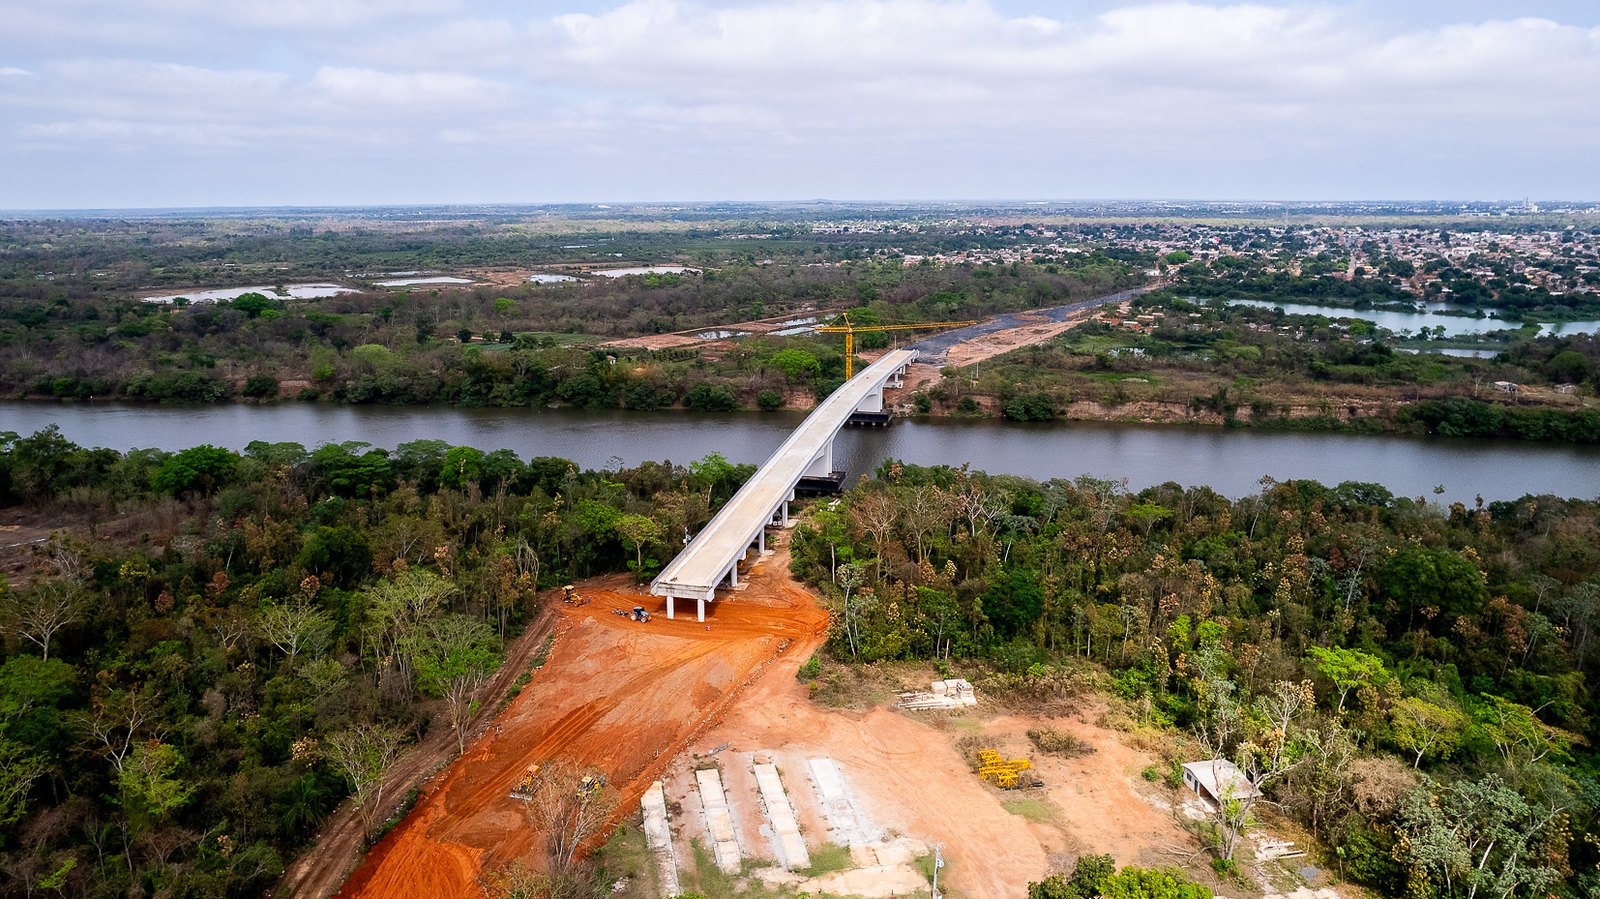 Nova ponte em Mato Grosso vai desafogar trânsito entre Cuiabá e Várzea Grande, diz governo do Estado